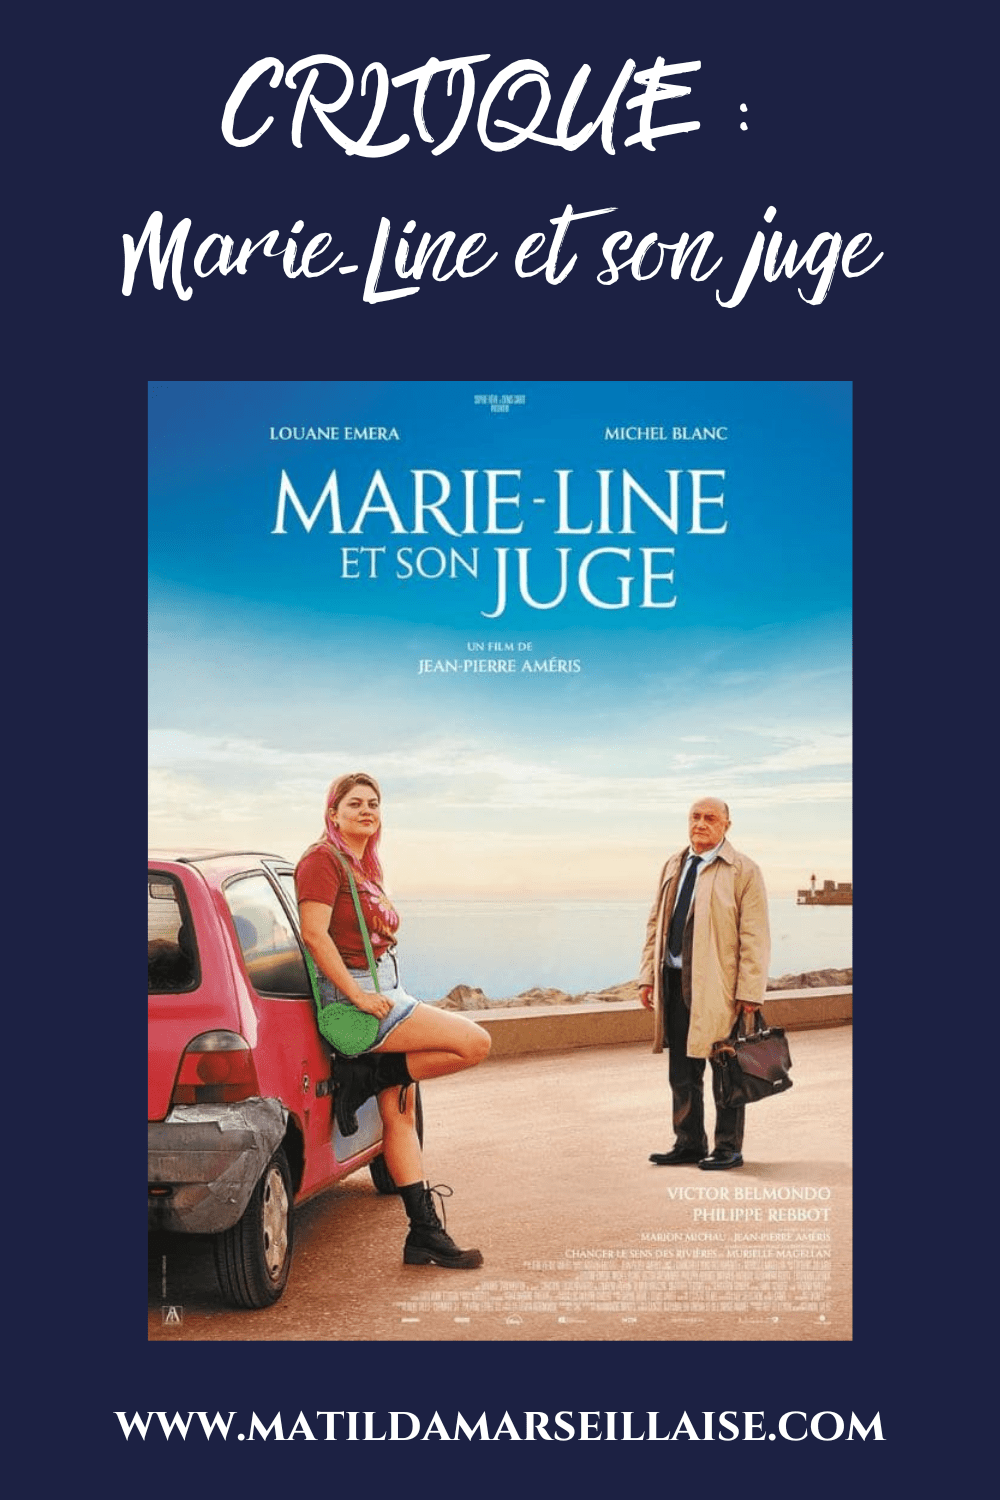 Marie-Line et son juge est un film réconfortant sur le fait de tourner la chance et de découvrir son plein potentiel